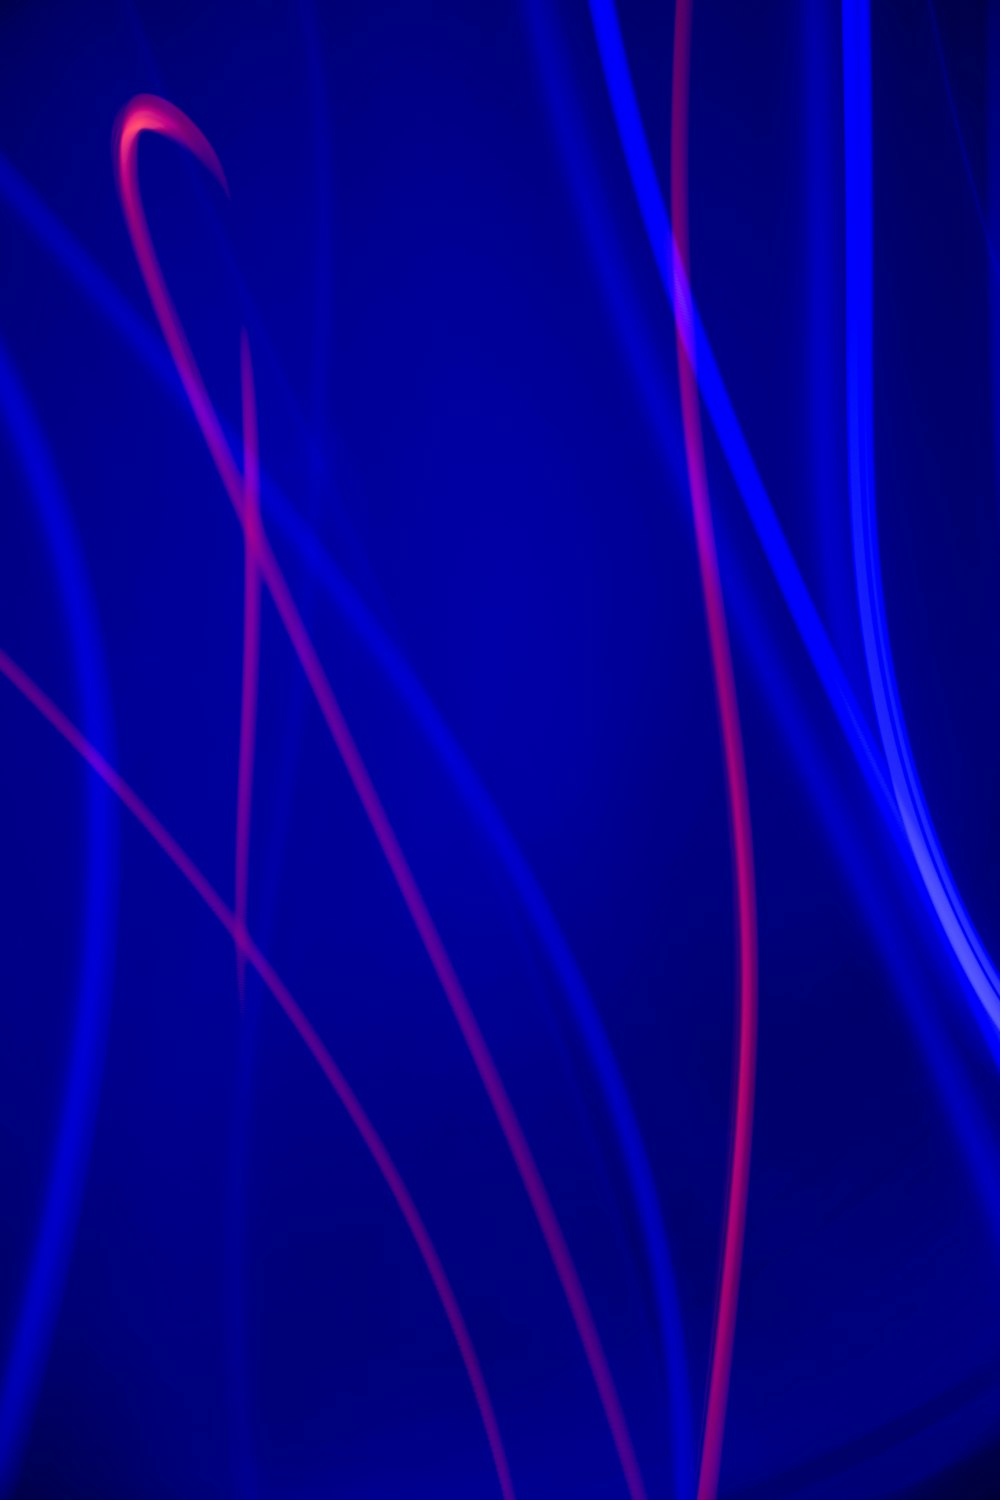 Foto fondo de pantalla digital de luz azul y blanca – Imagen Azul gratis en  Unsplash